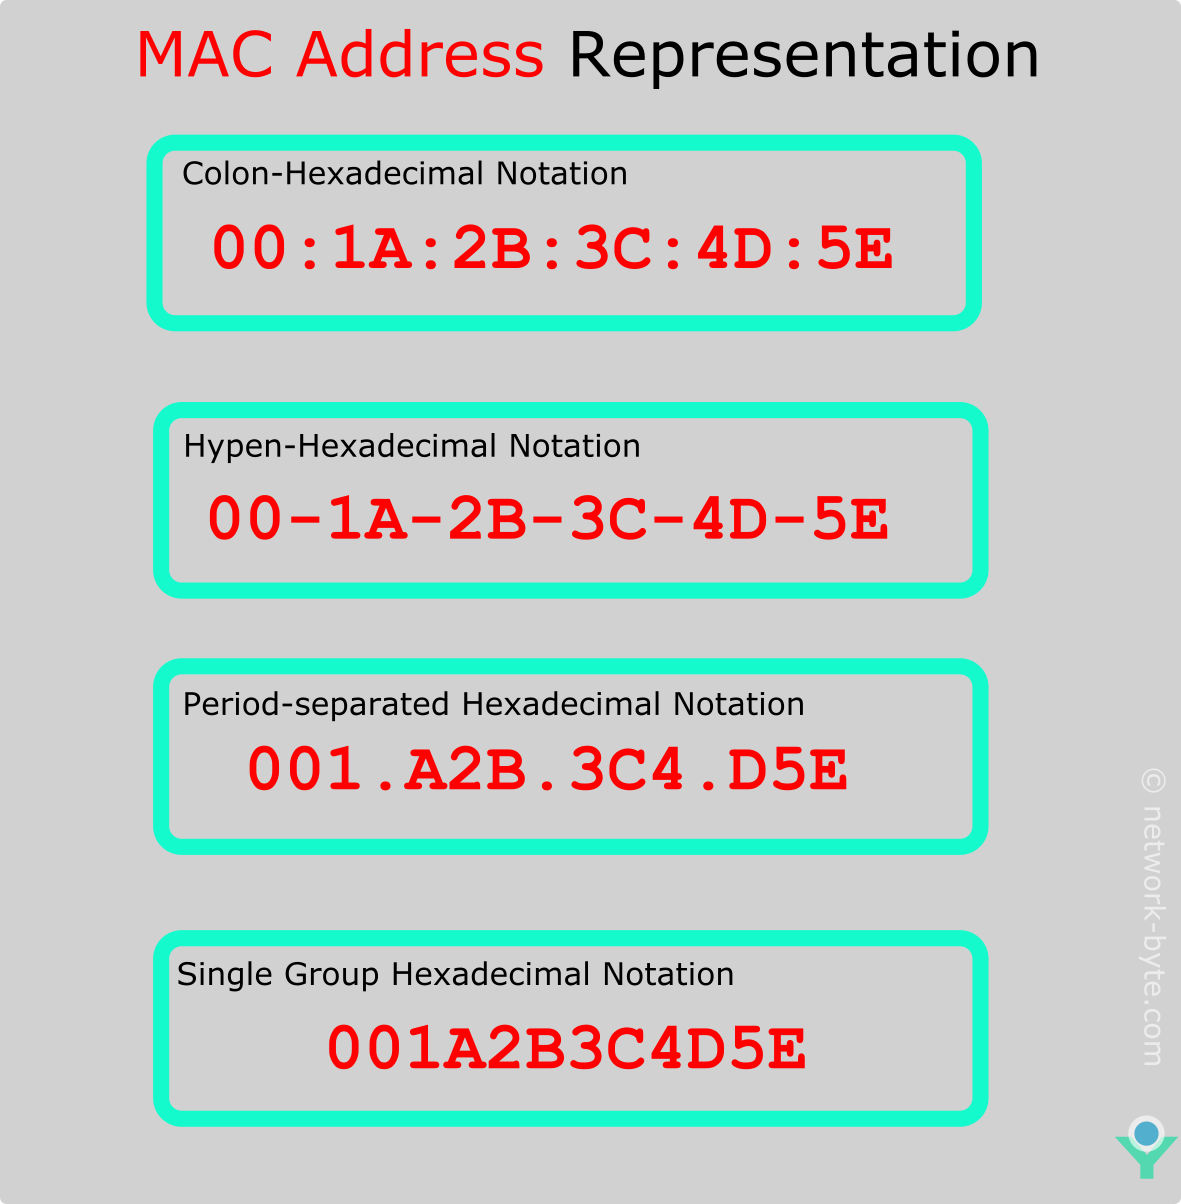 mac address local assignment bit